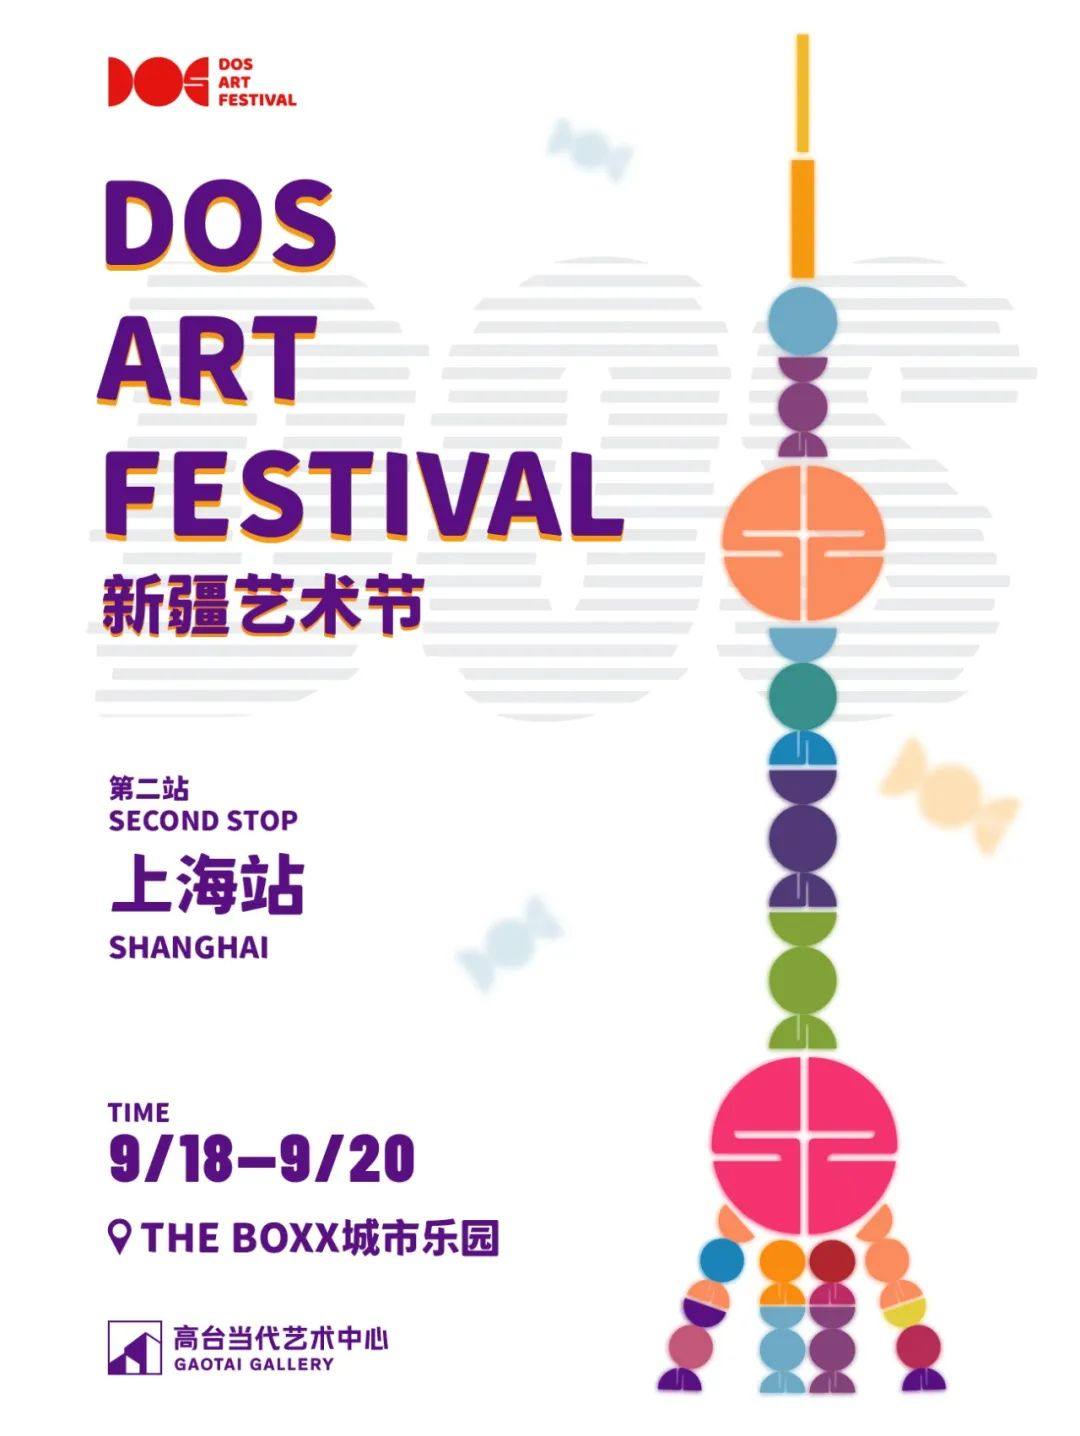 Dos Art Festival arrives in Shanghai